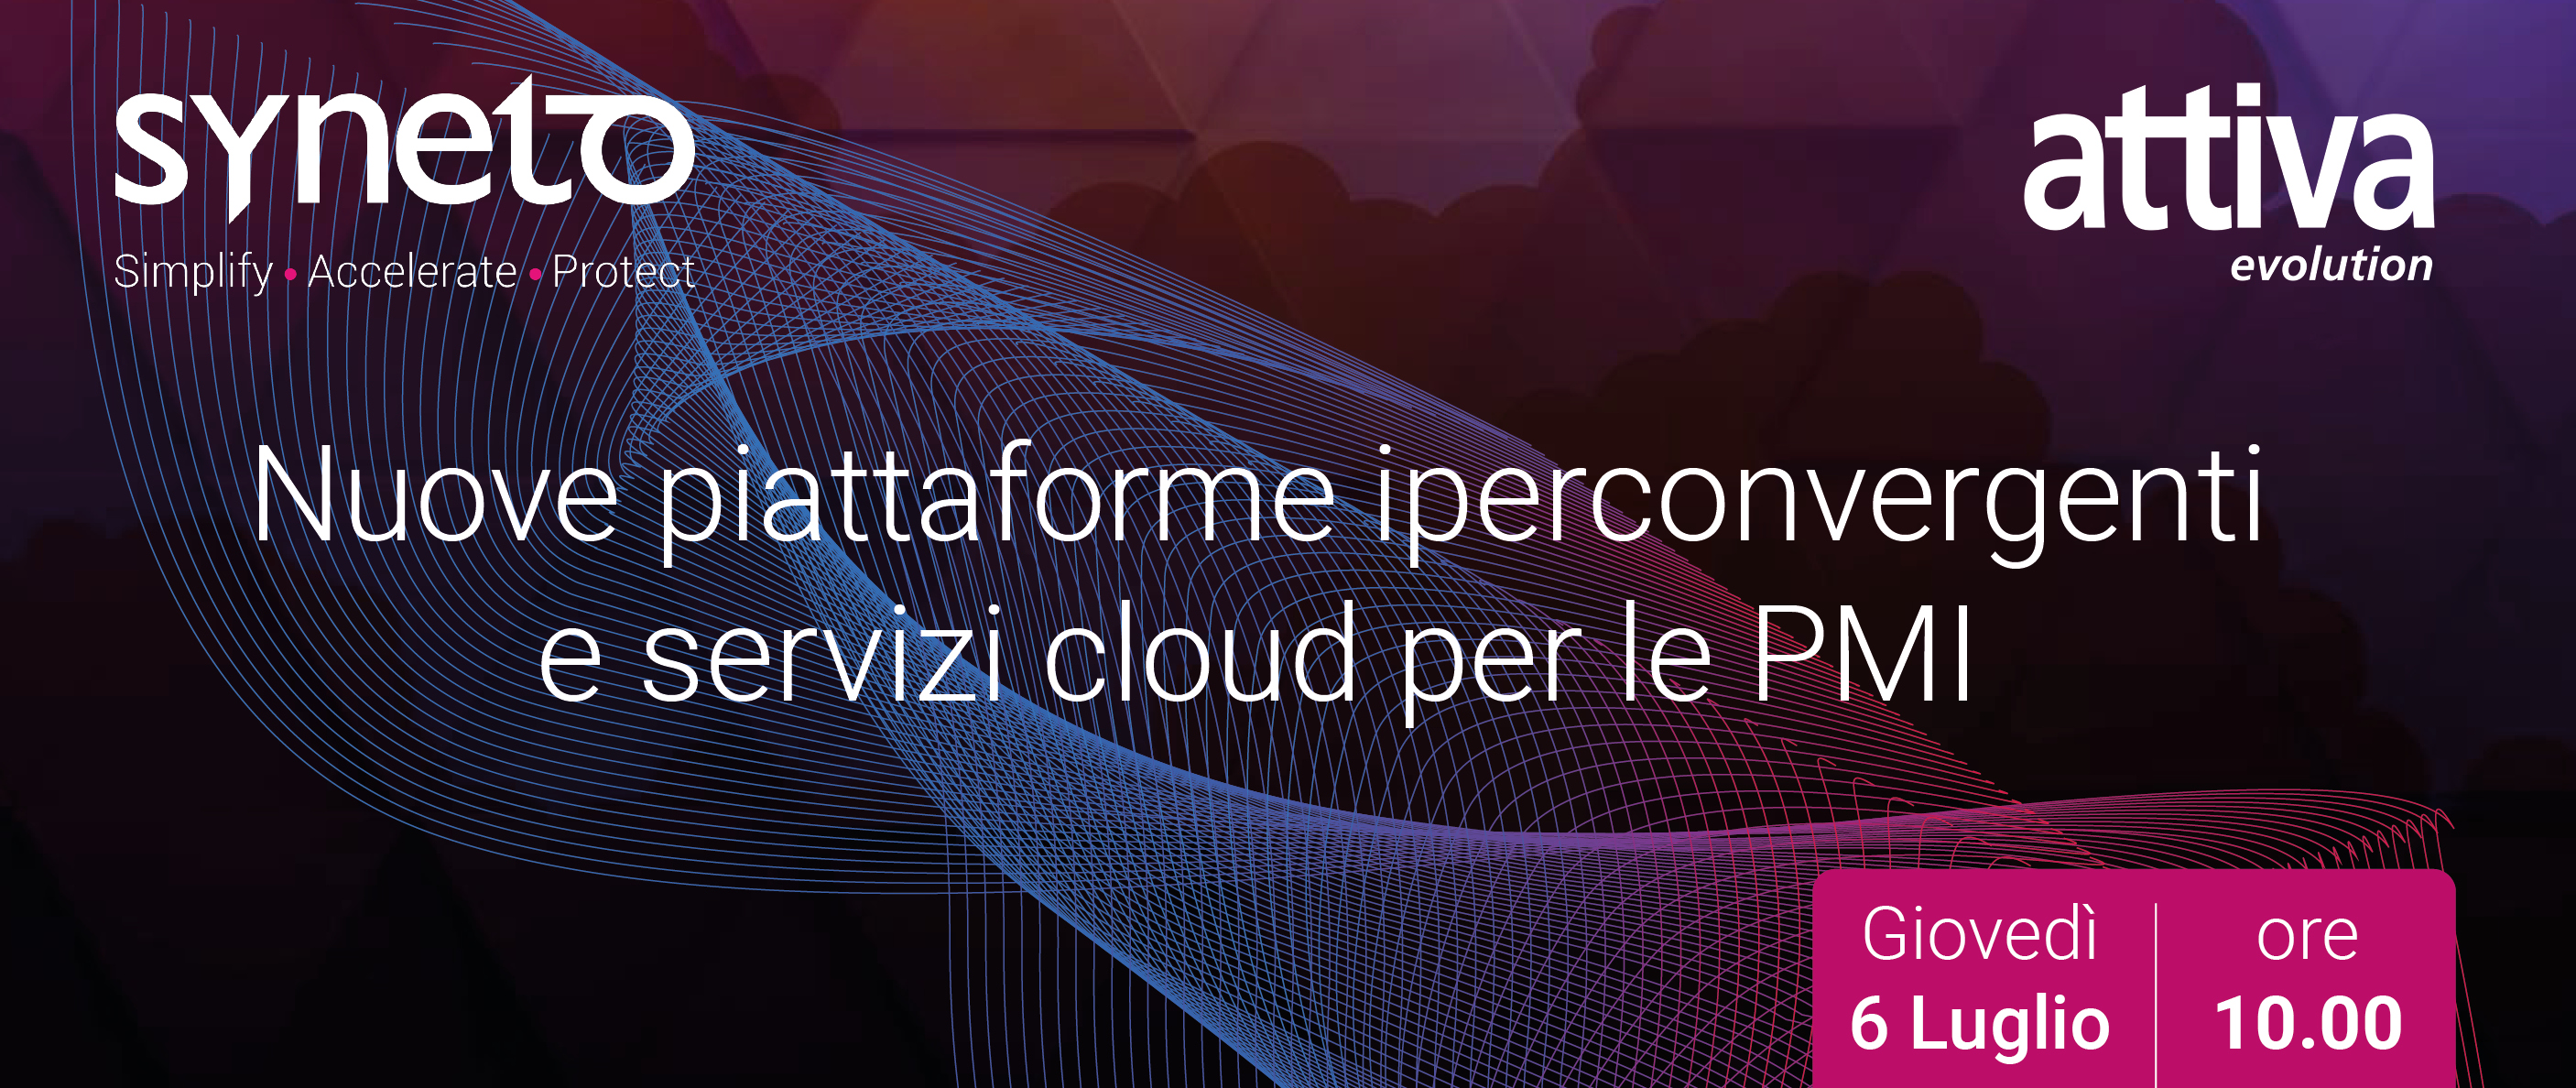 Syneto: nuove piattaforme iperconvergenti e servizi cloud per le PMI